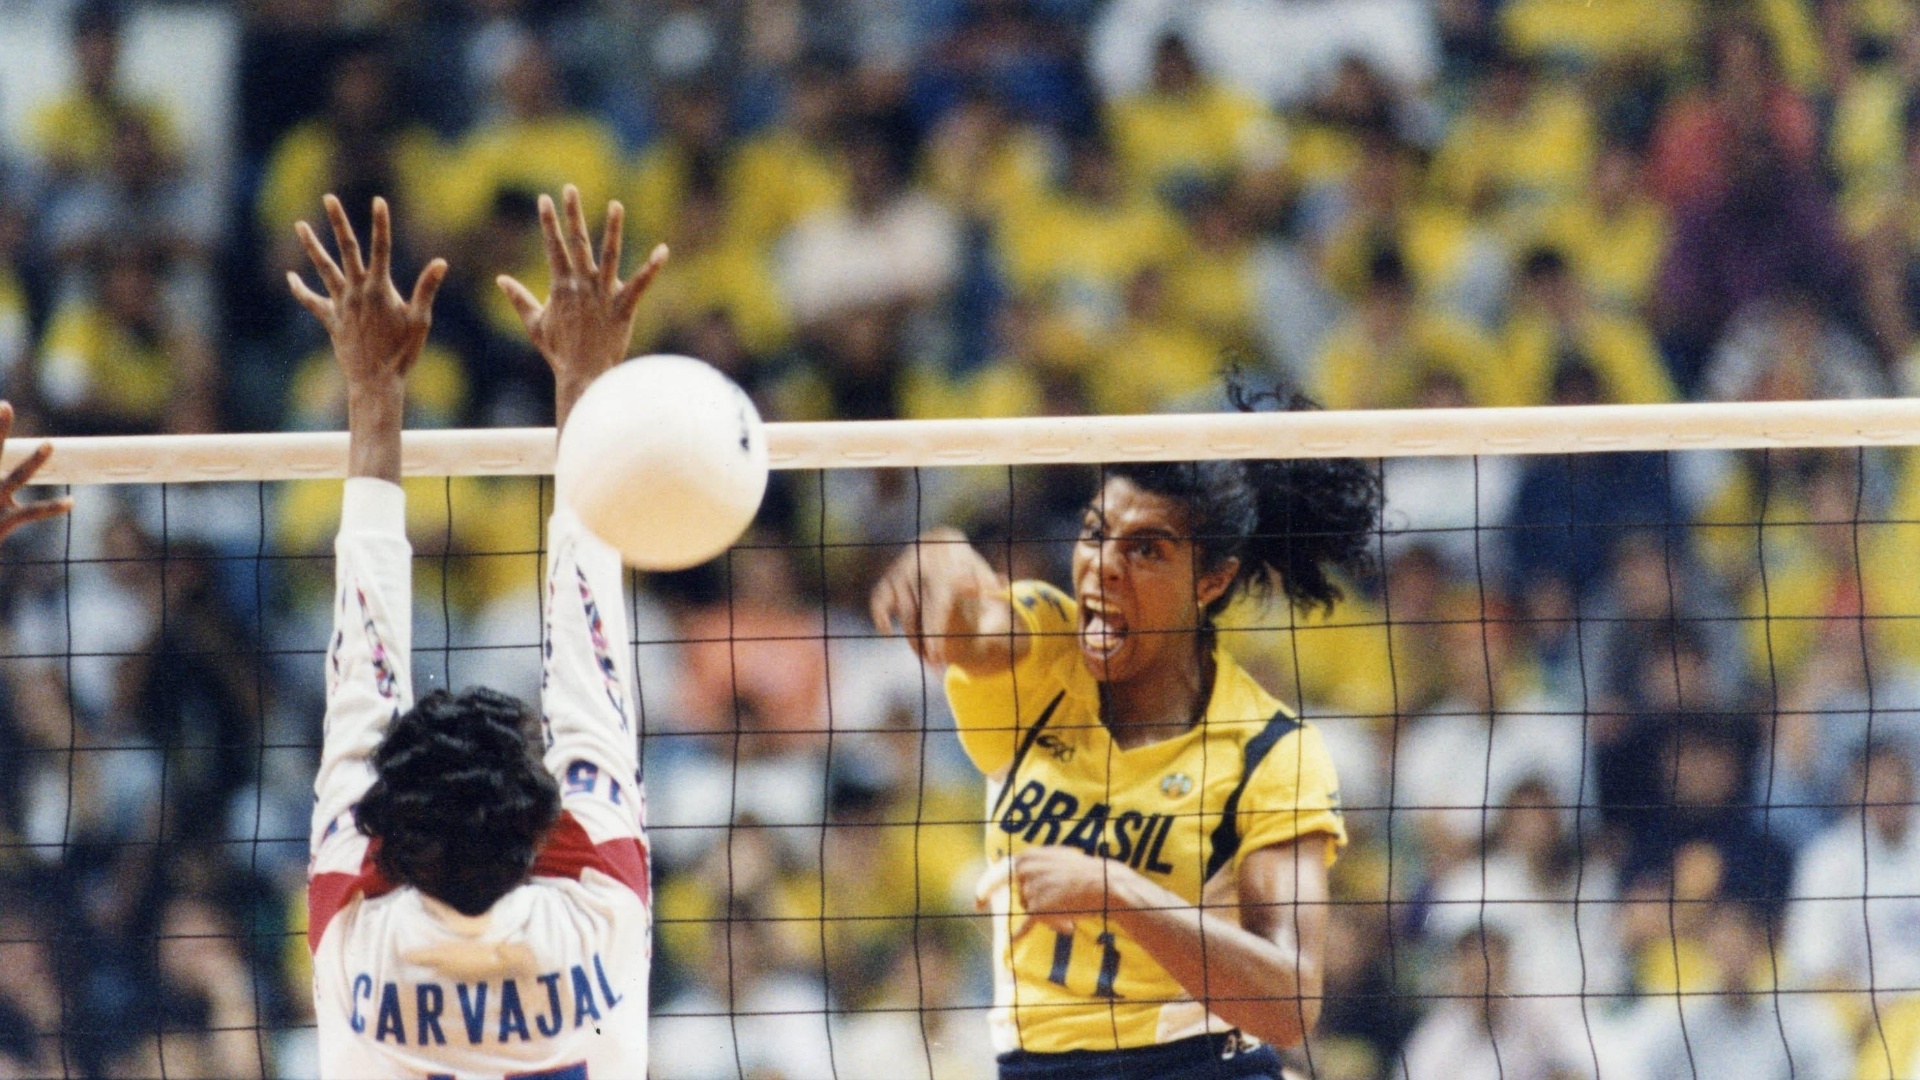 Márcia Fu em ação contra Cuba, no Ginásio do Ibirapuera, na final do Mundial de vôlei de 1994